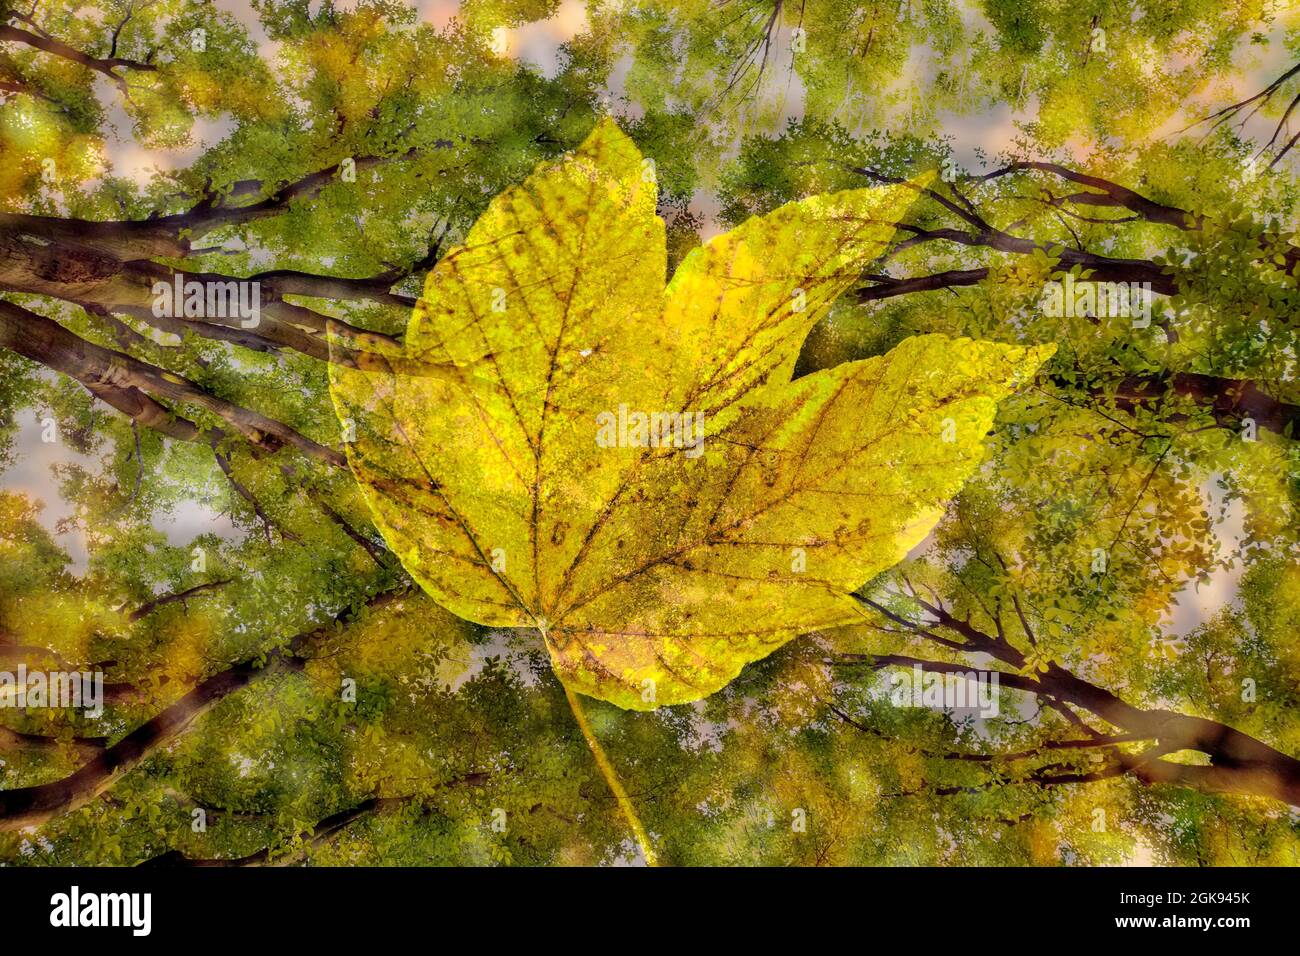 Carpino comune, carpino europeo (Carpinus betulus), fotografia sperimentale con cornici e foglia d'autunno, Germania Foto Stock